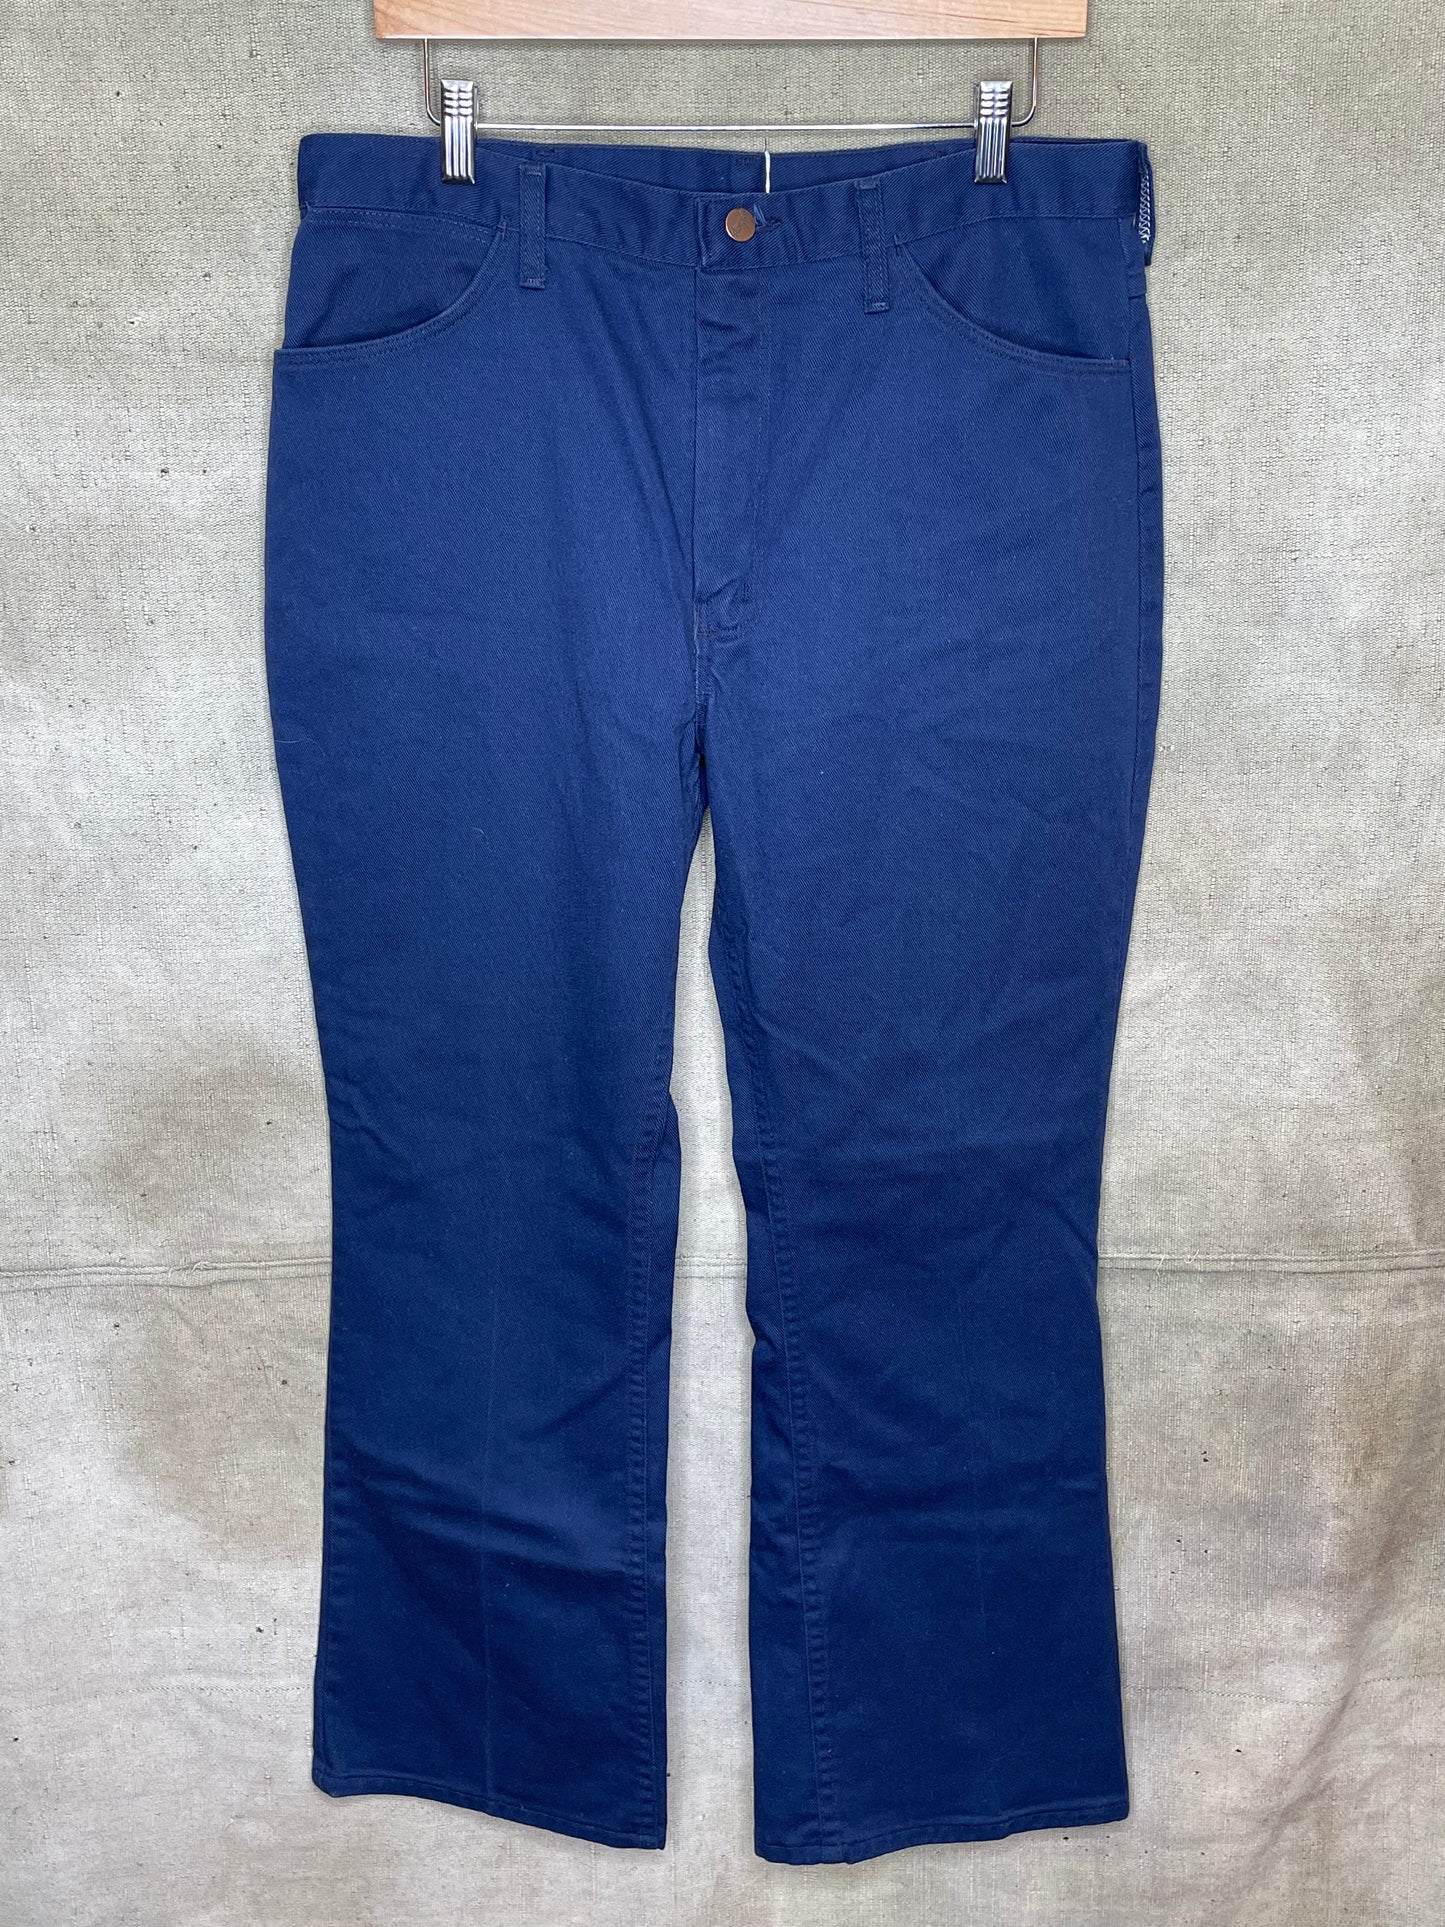 Vintage 80s Wrangler Dark Blue Pants W34 L30